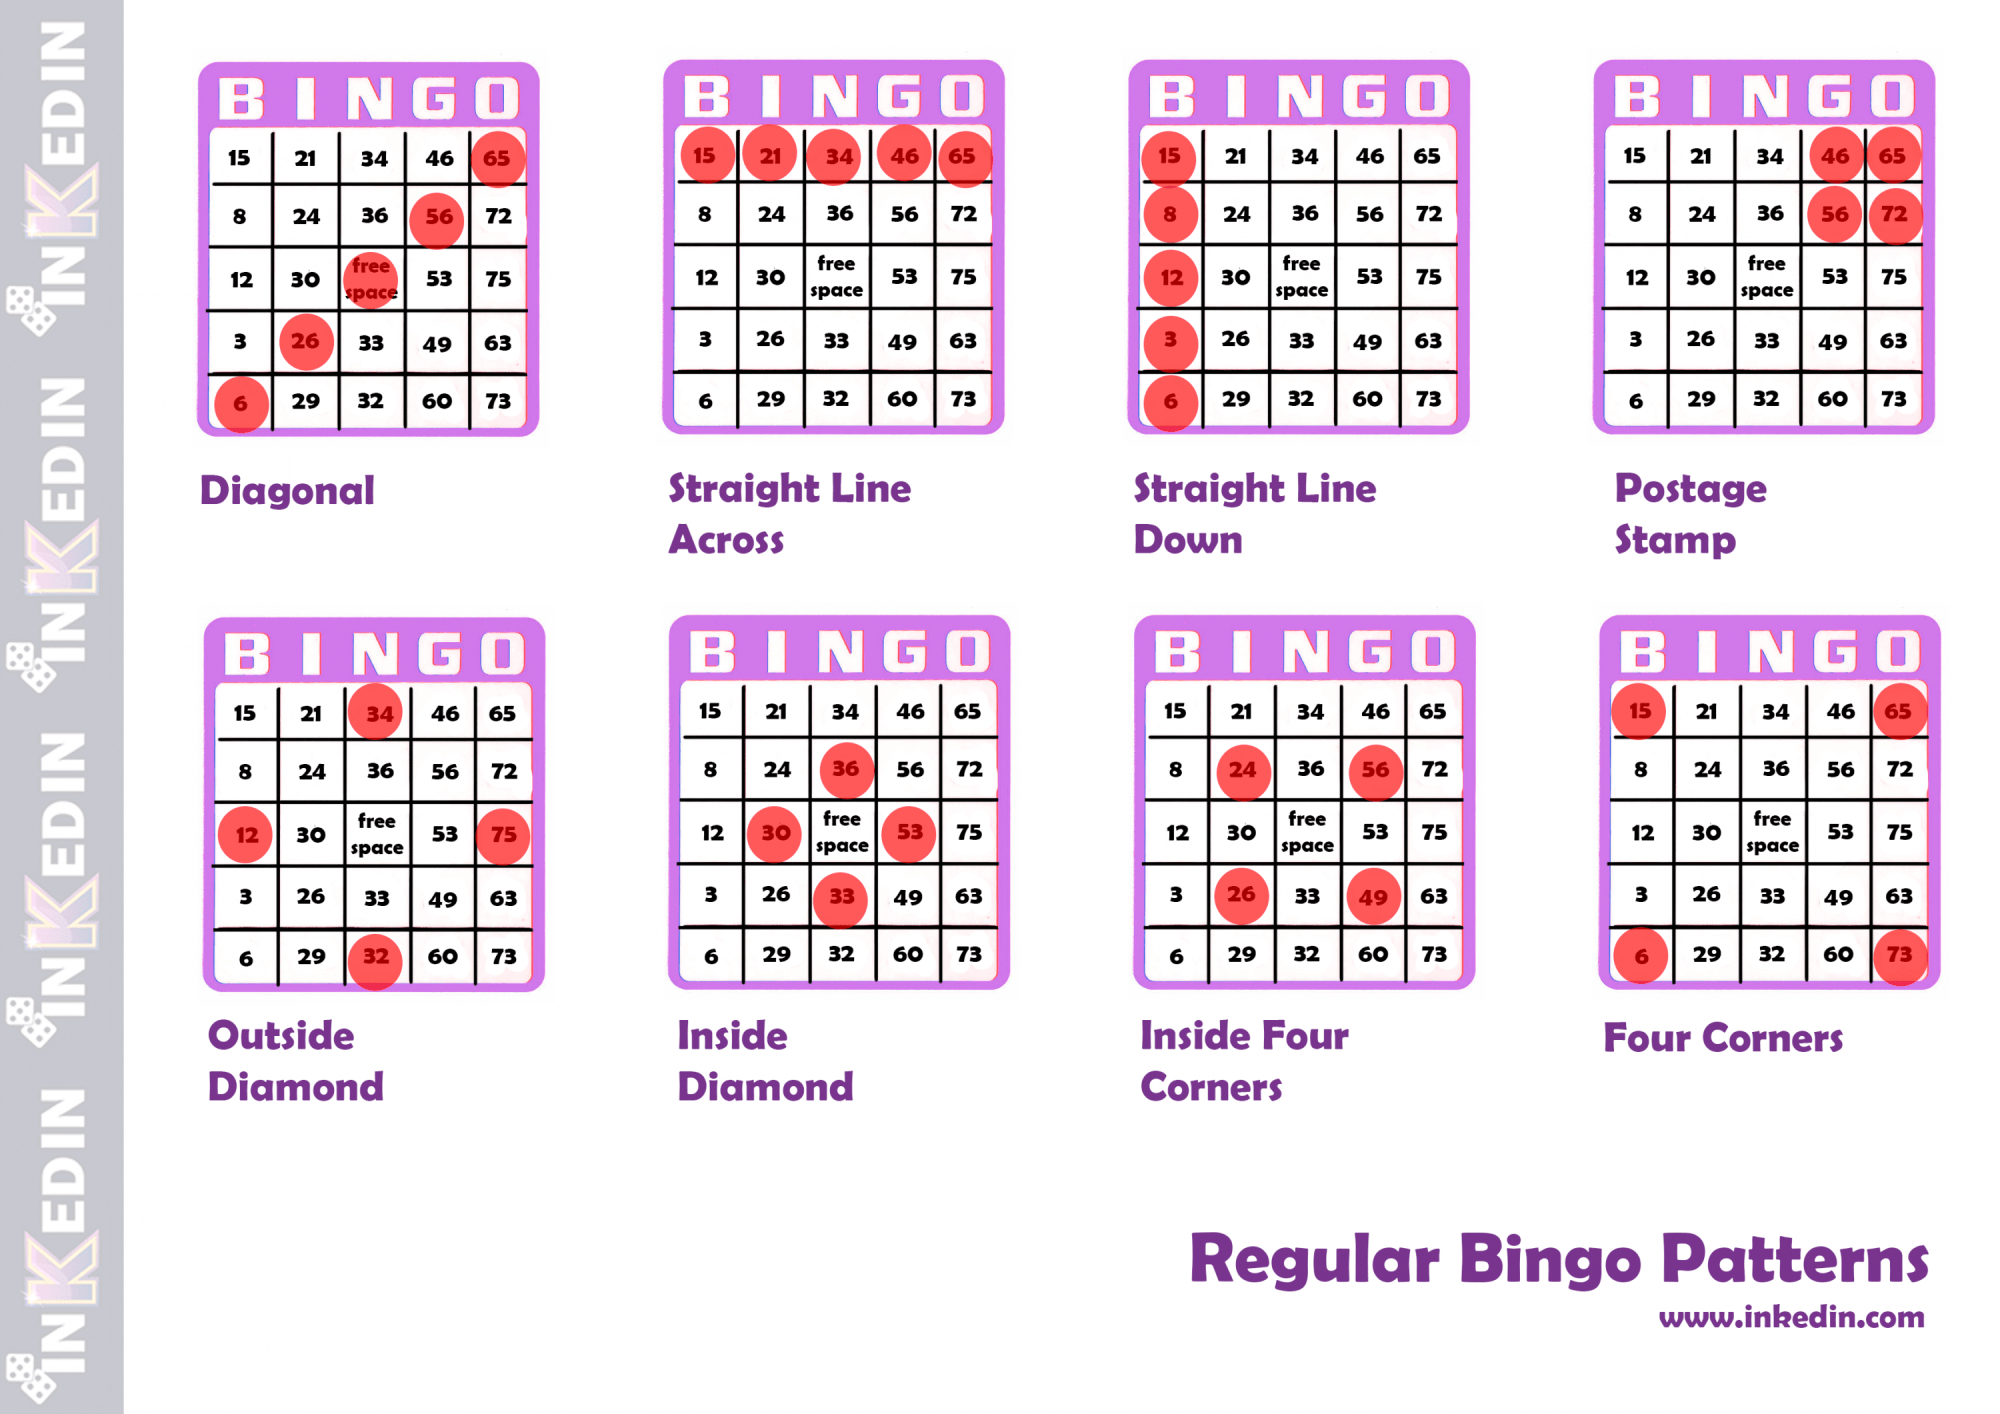 bingo catd winners